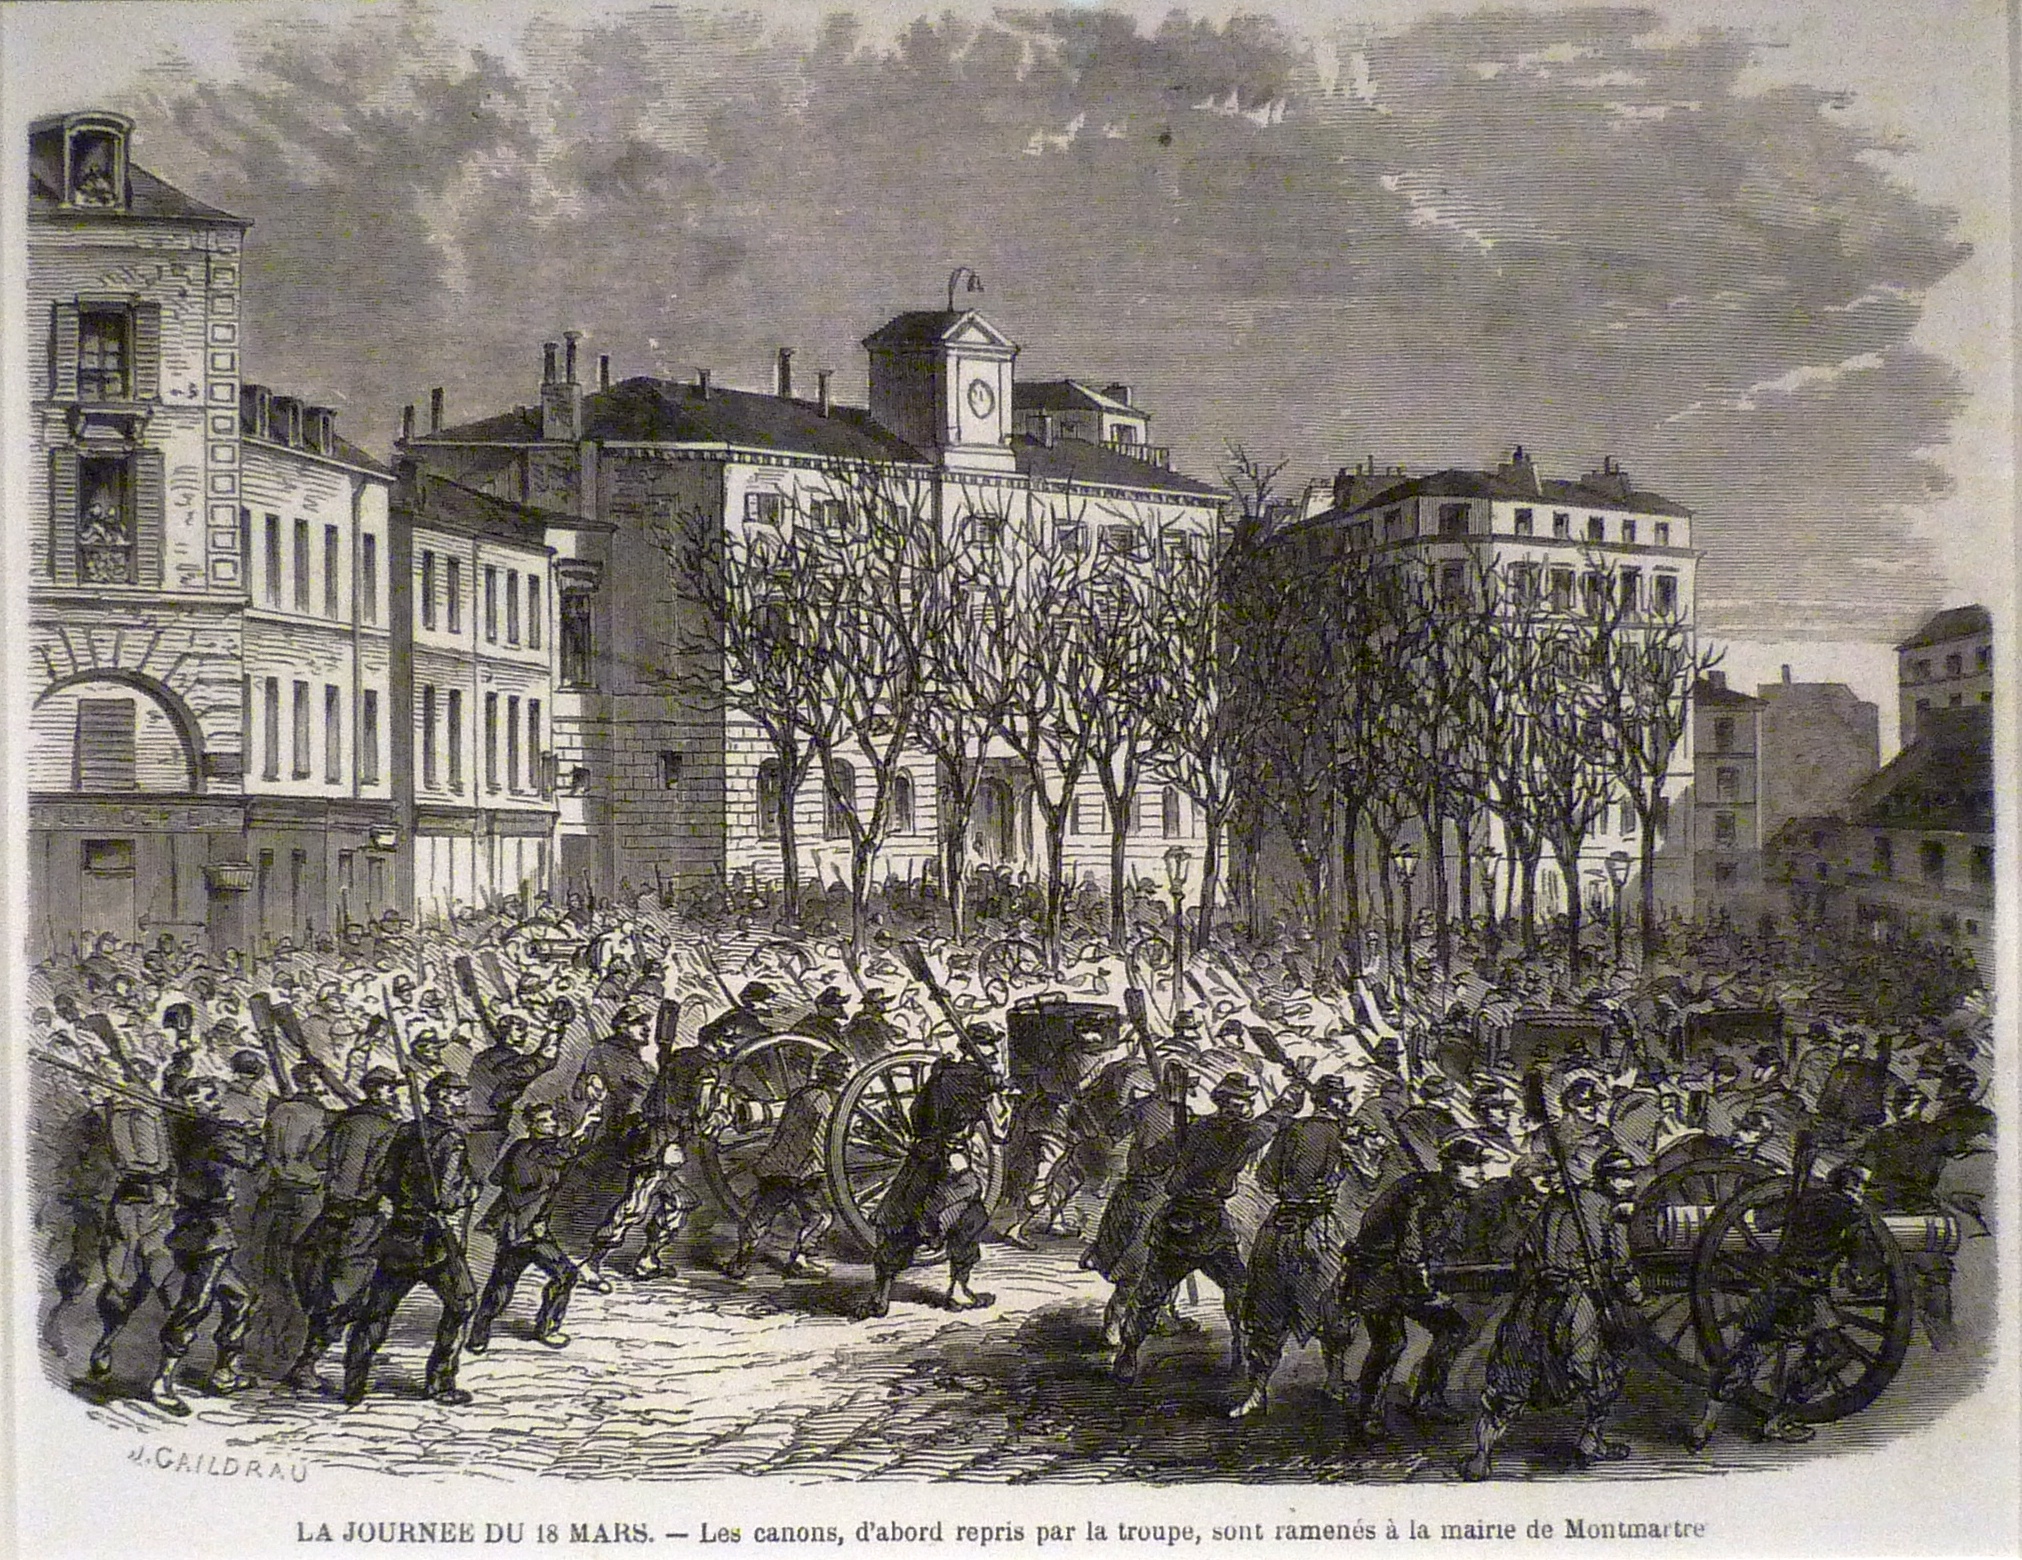  Arrivée des canons repris à l'armée devant la mairie du 18 e arrondissement, le 18 mars 1871 - Gravure de J. Gaildrau pour L'Illustration du 25 mars 1871.